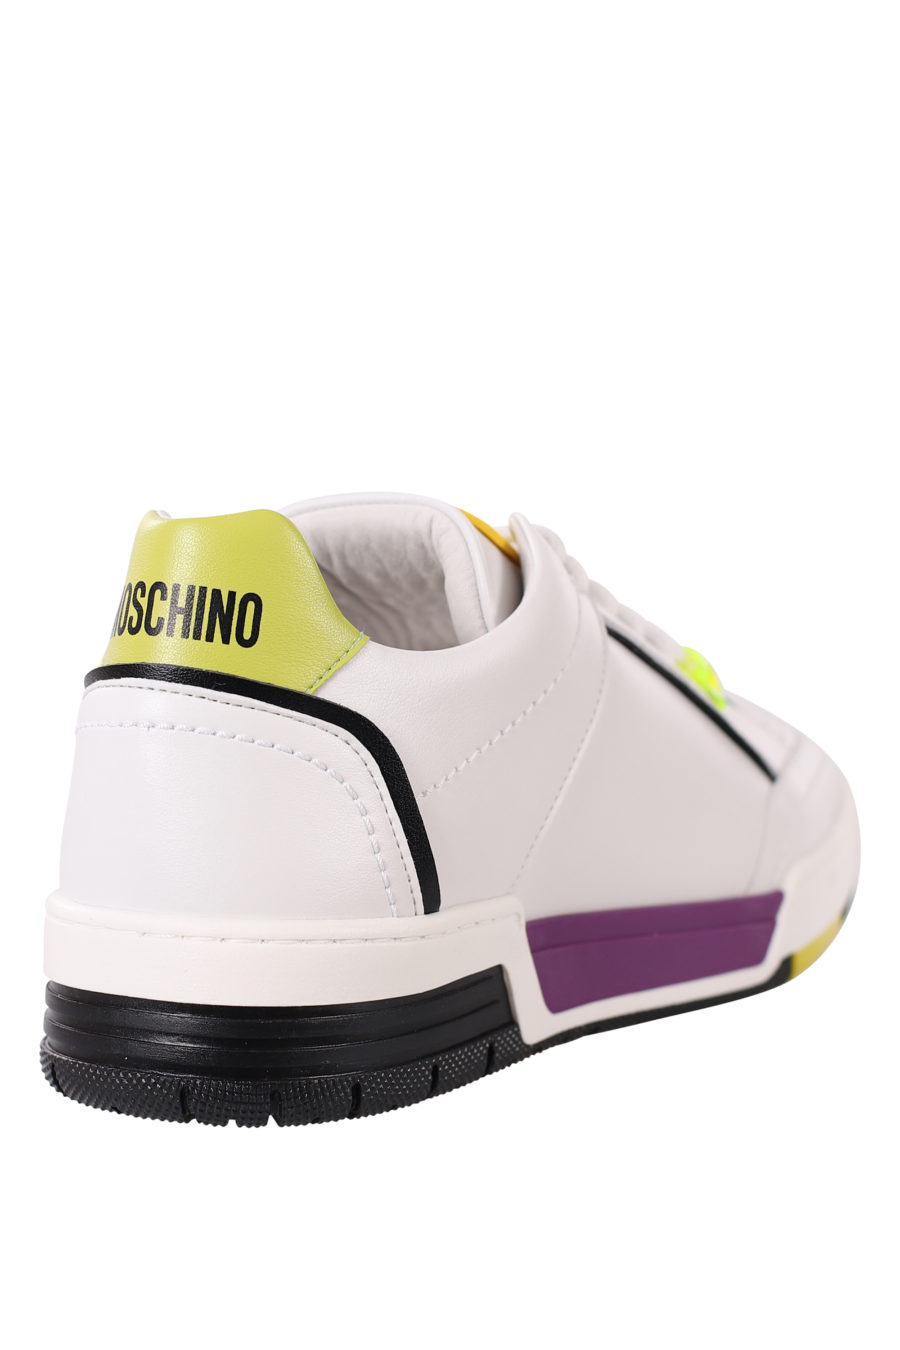 Zapatillas blancas con detalles lila y amarillo - IMG 0377